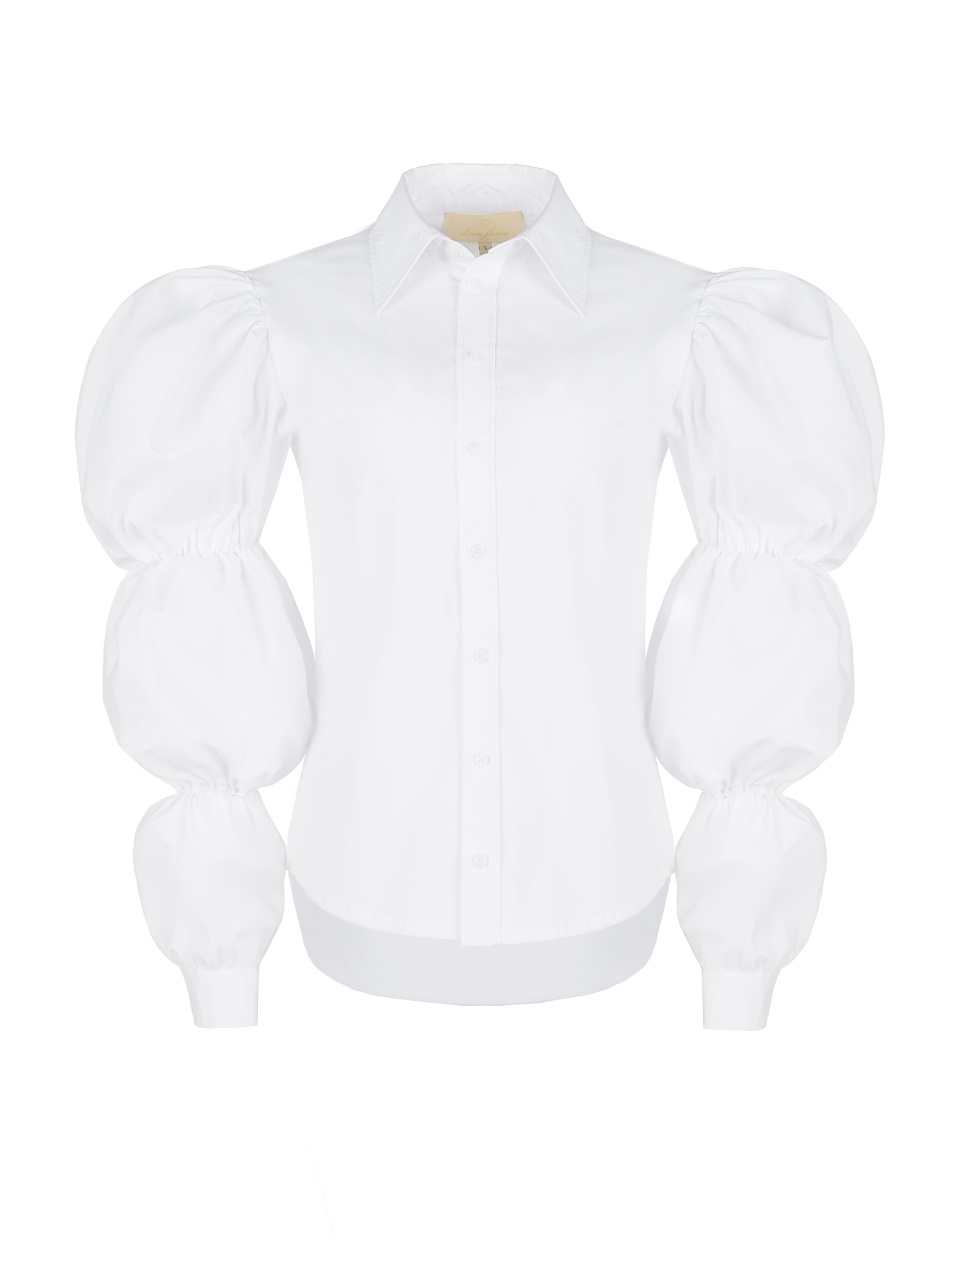 Белая хлопковая блузка с тремя буфами, 1